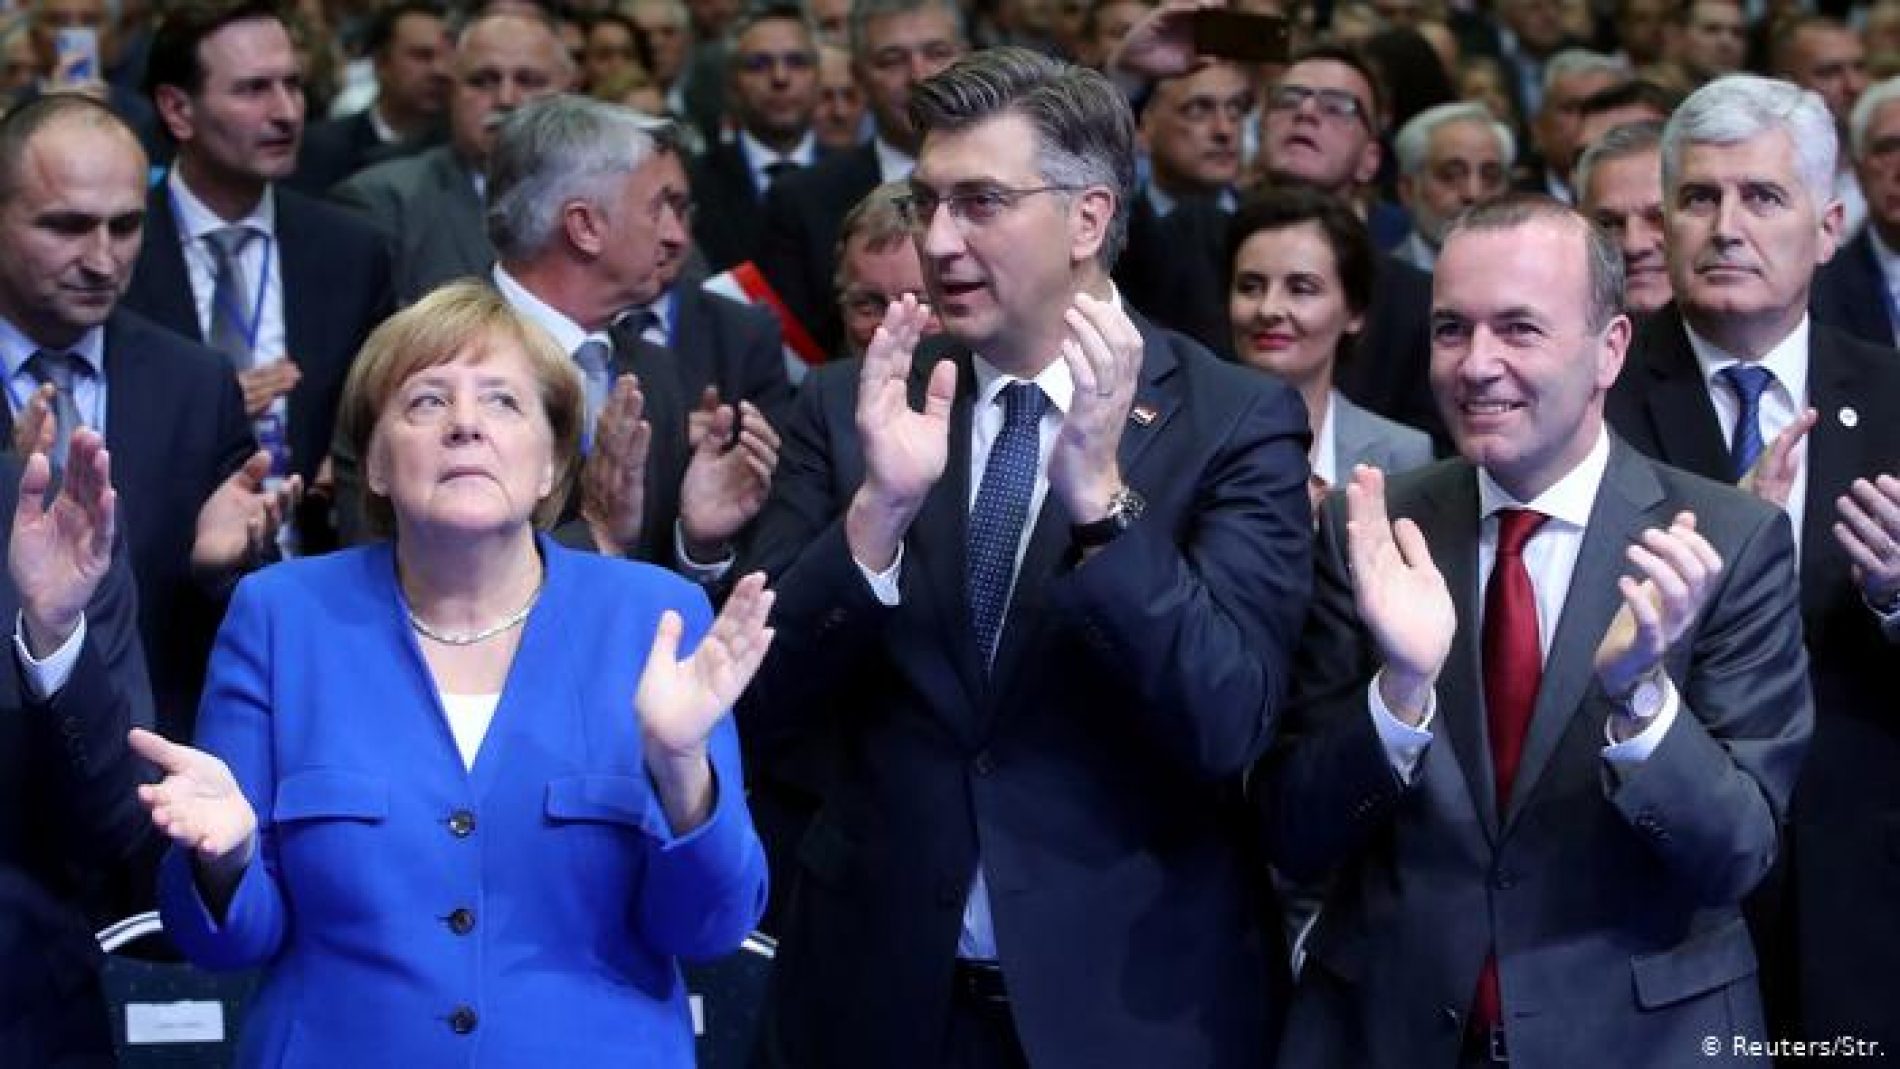 Organizacija Bosnian Advocacy Center traži izvinjenjenje od njemačke ambasade i Merkelove